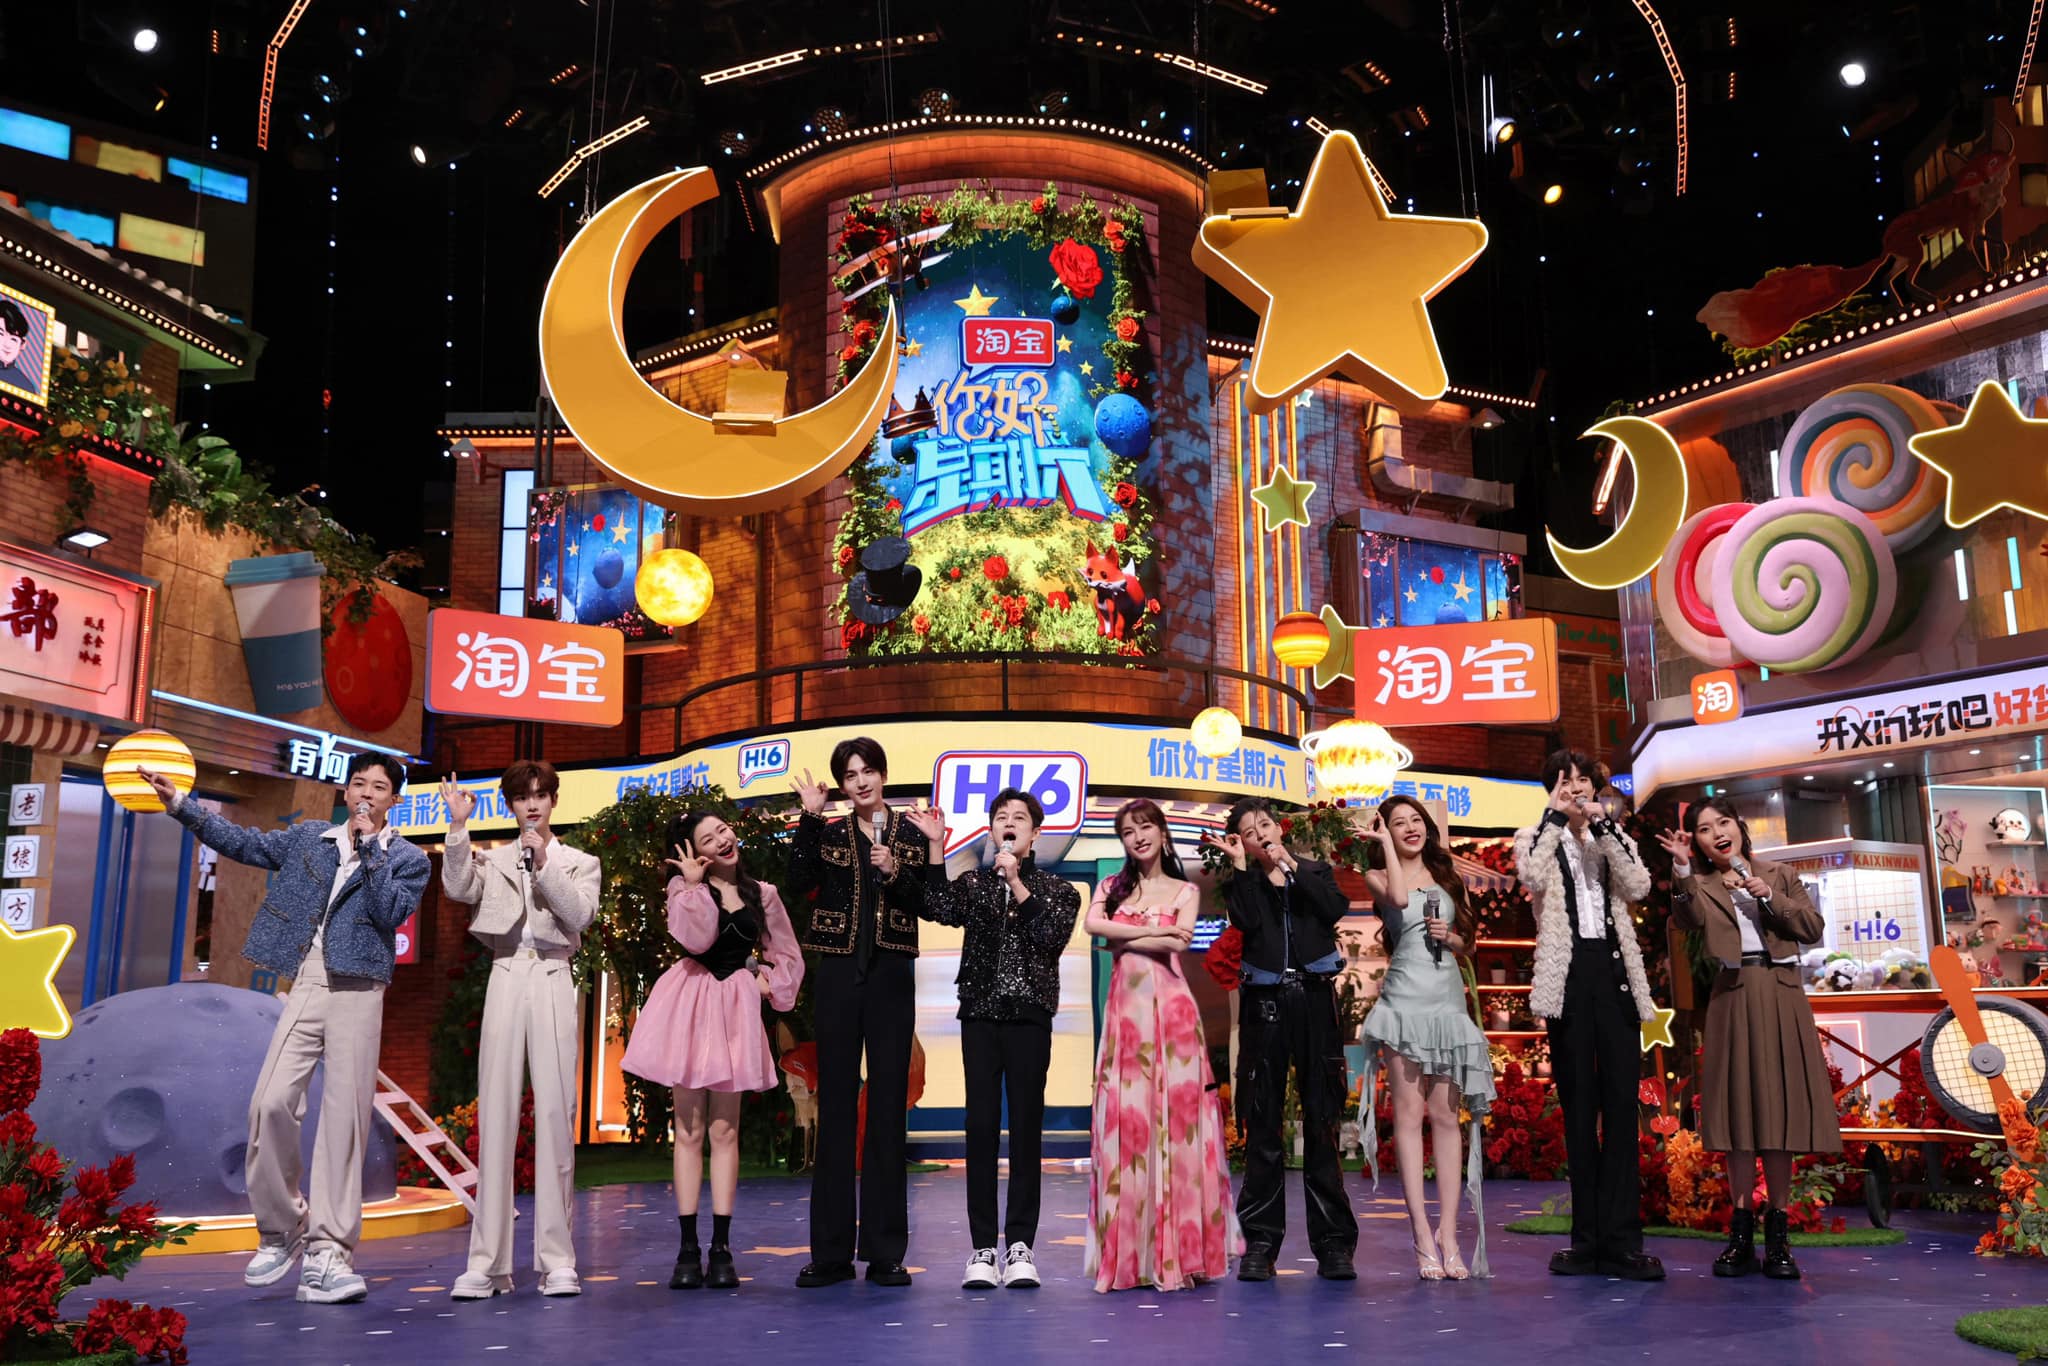 See Tình khuấy đảo loạt gameshow ở Trung Quốc.